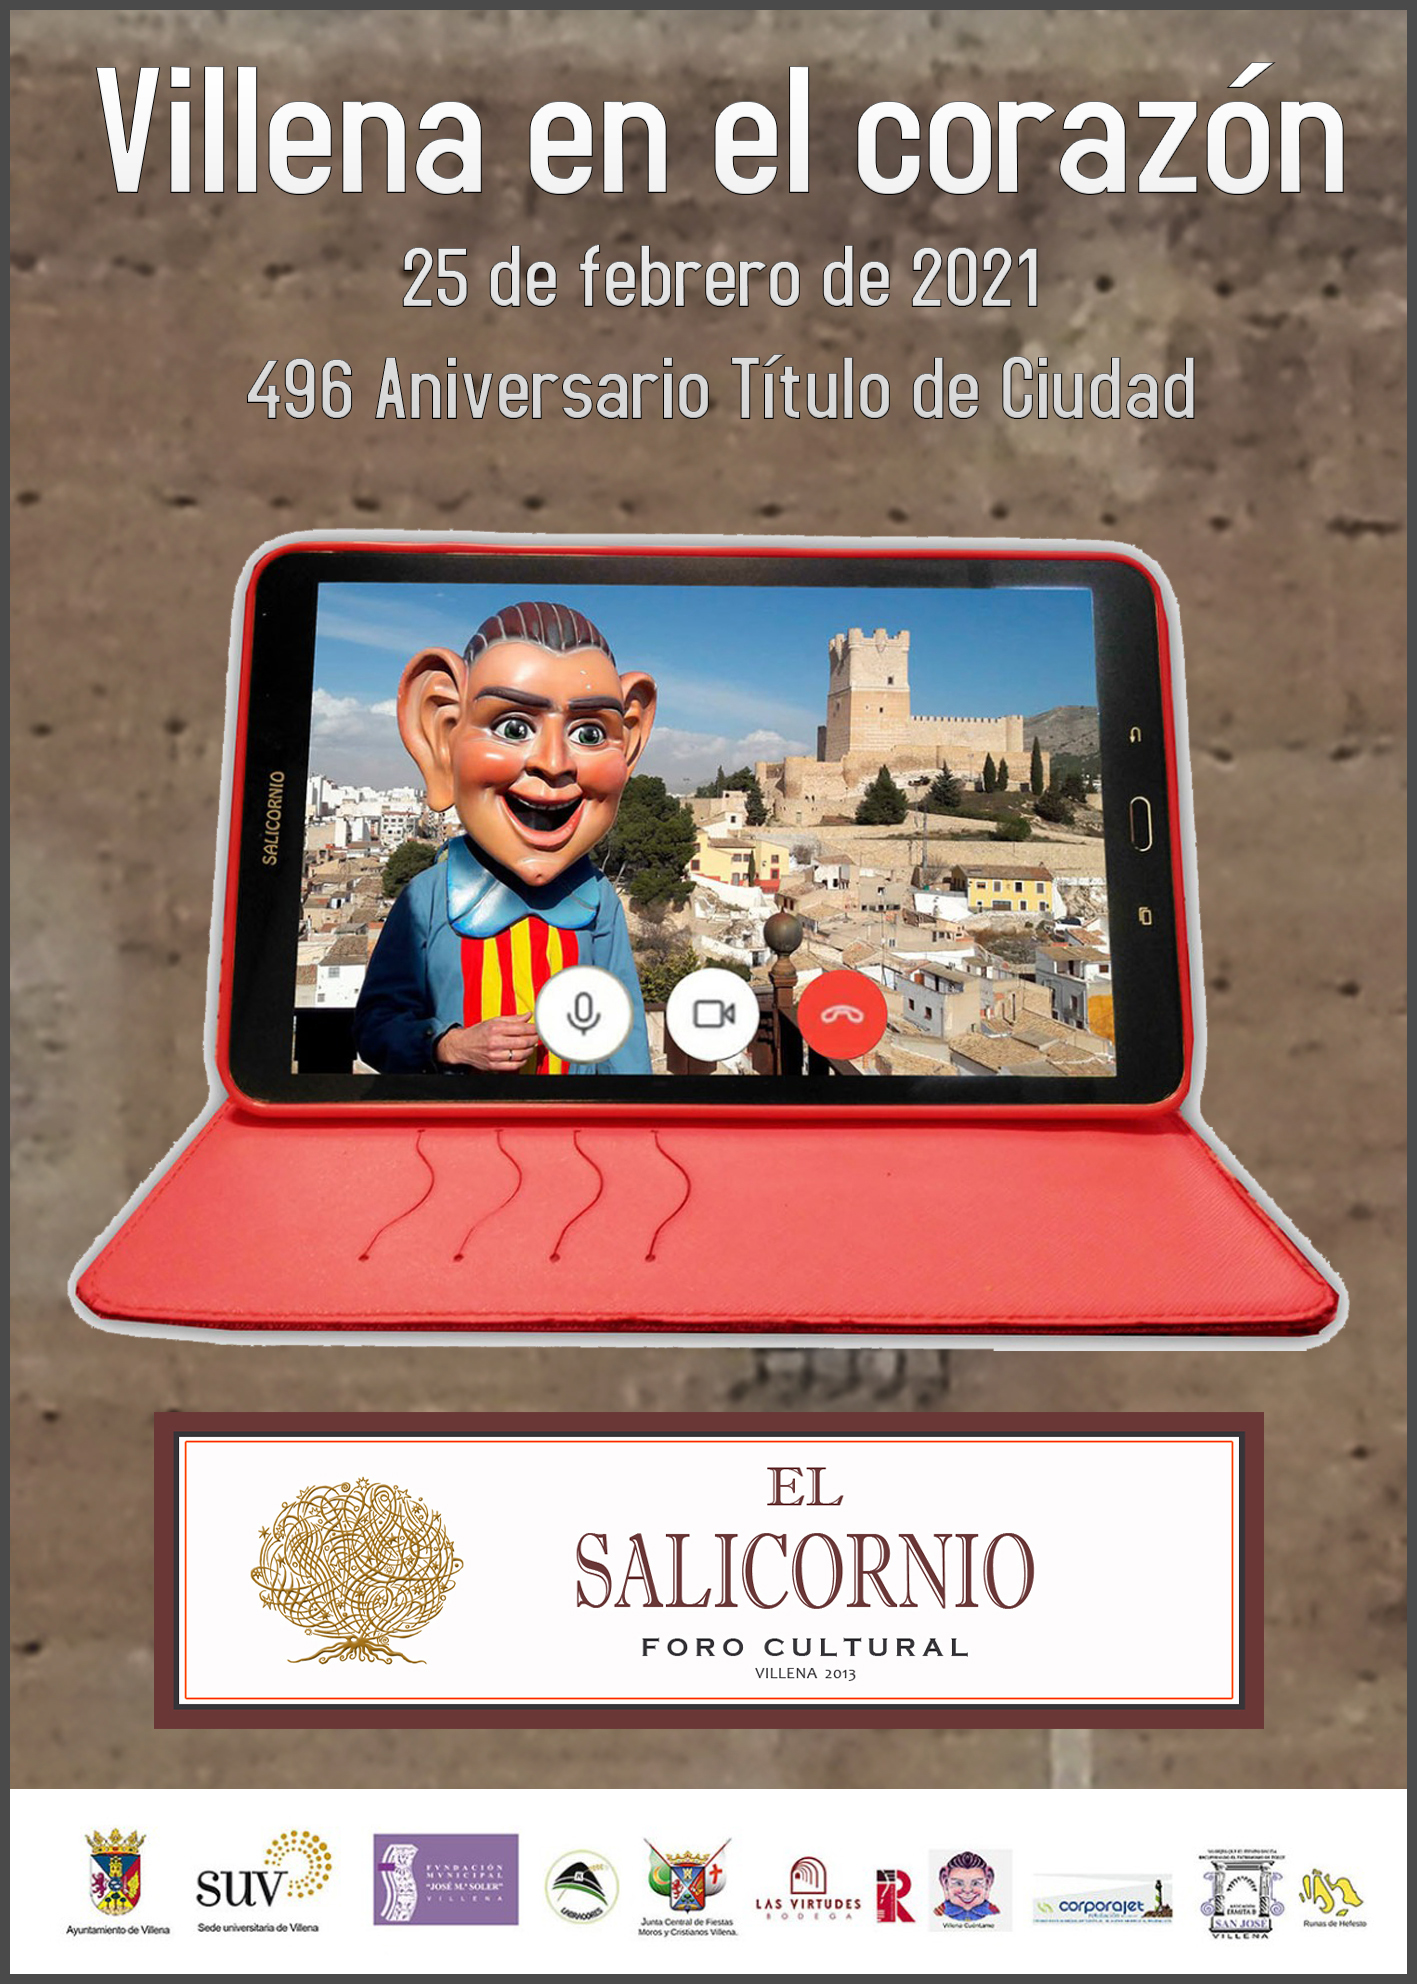 El Salicornio celebrará de manera virtual el 496 aniversario del título de Ciudad de Villena